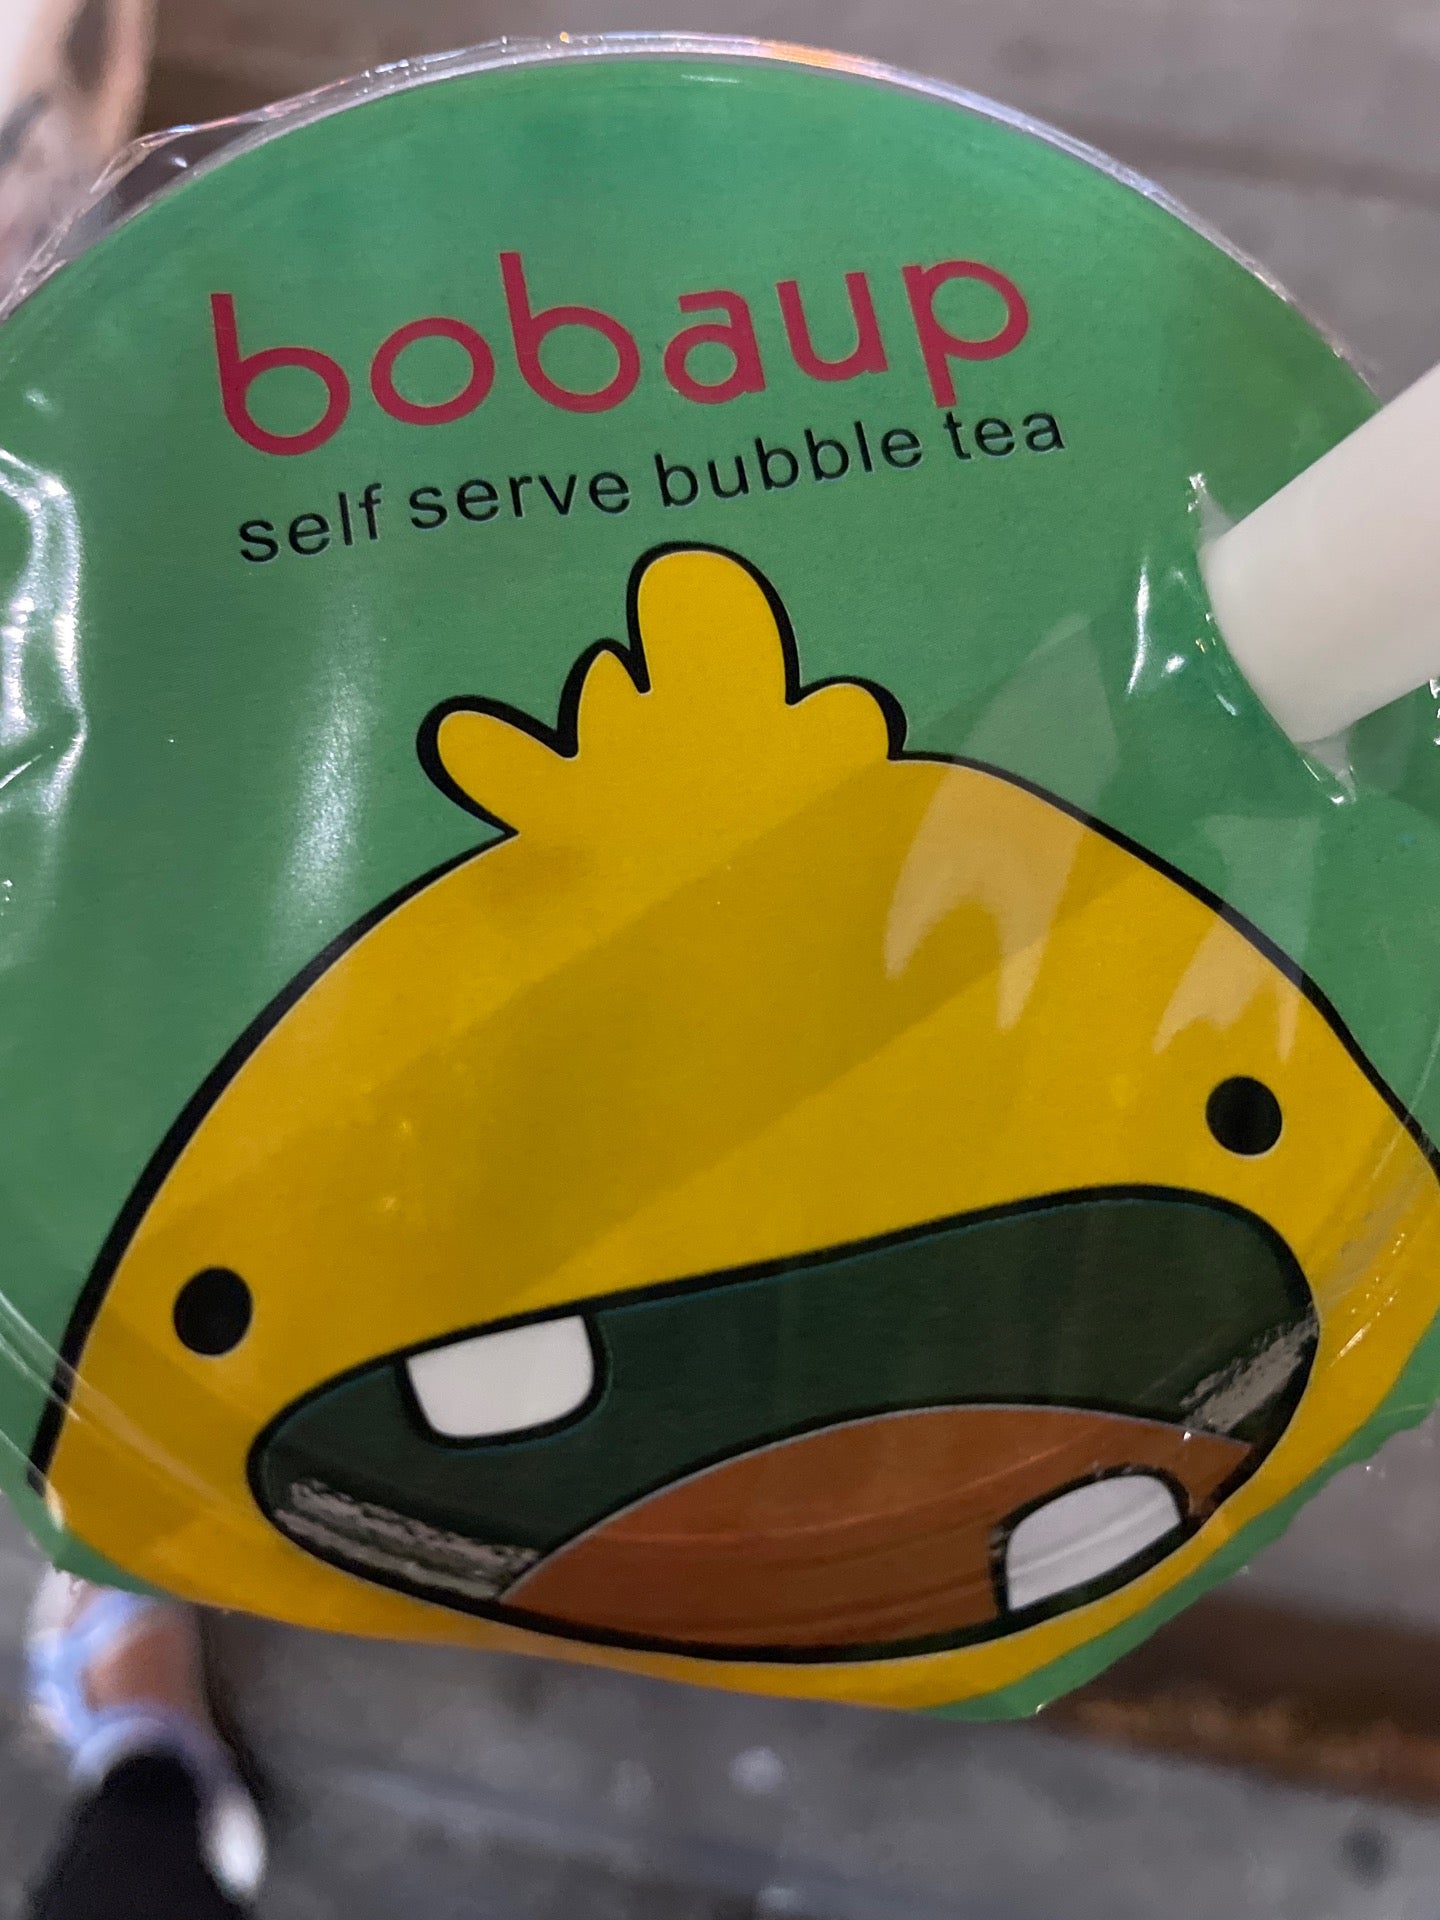 Boba Up - Self Serve Bubble Tea - Seattle, Washington